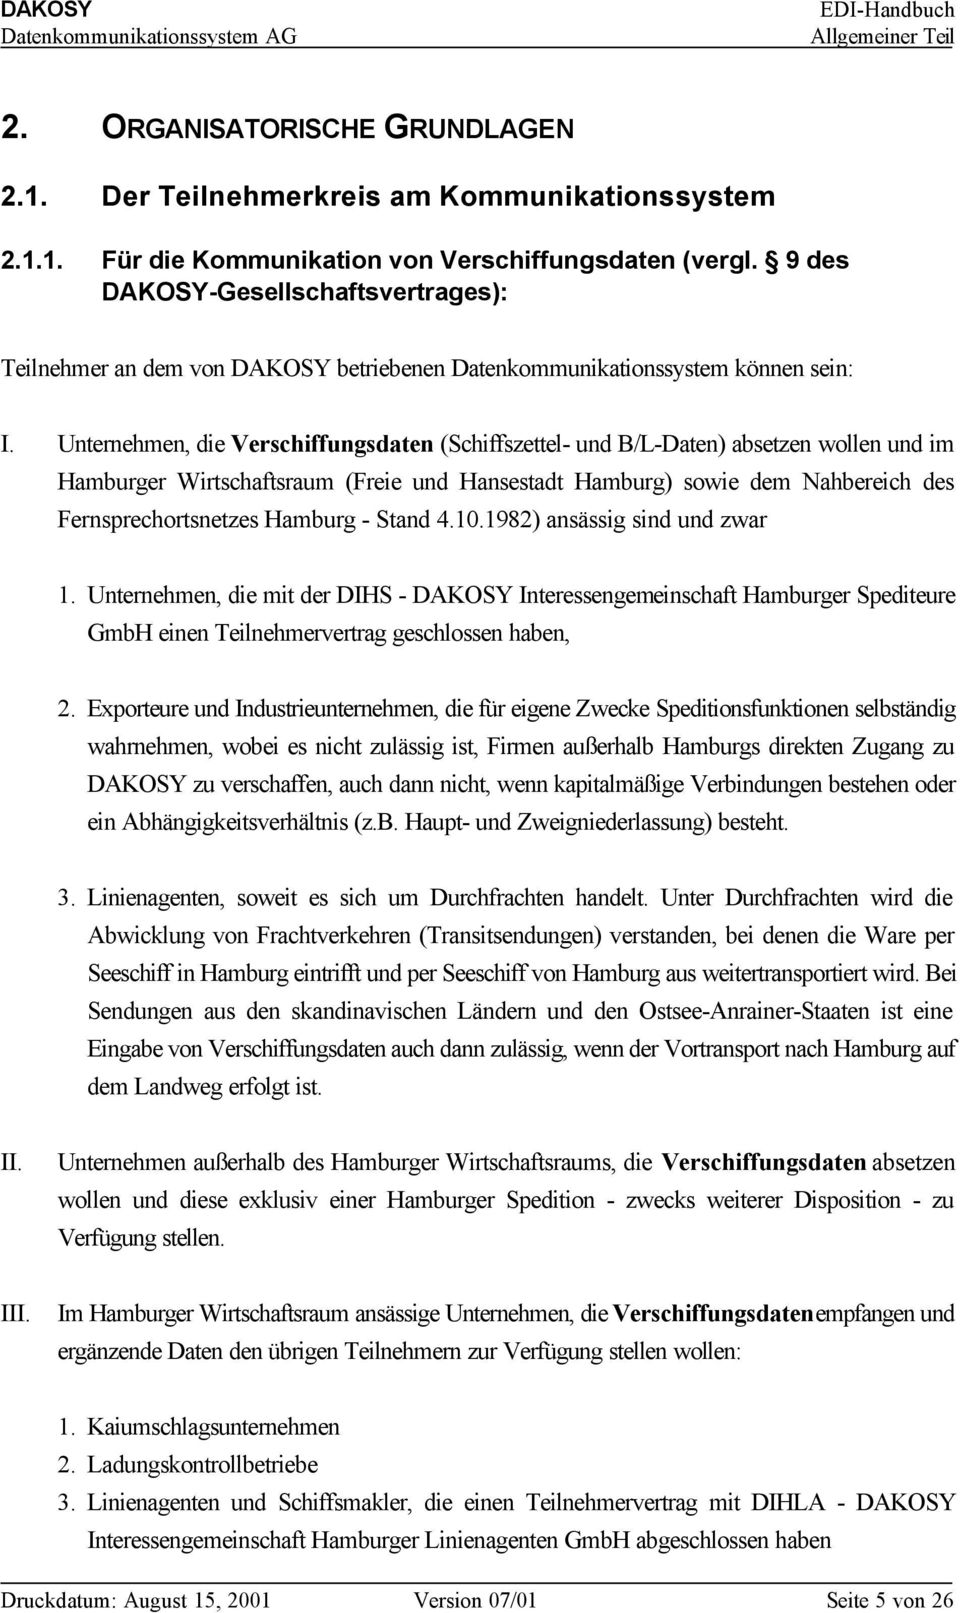 Unternehmen, die Verschiffungsdaten (Schiffszettel- und B/L-Daten) absetzen wollen und im Hamburger Wirtschaftsraum (Freie und Hansestadt Hamburg) sowie dem Nahbereich des Fernsprechortsnetzes